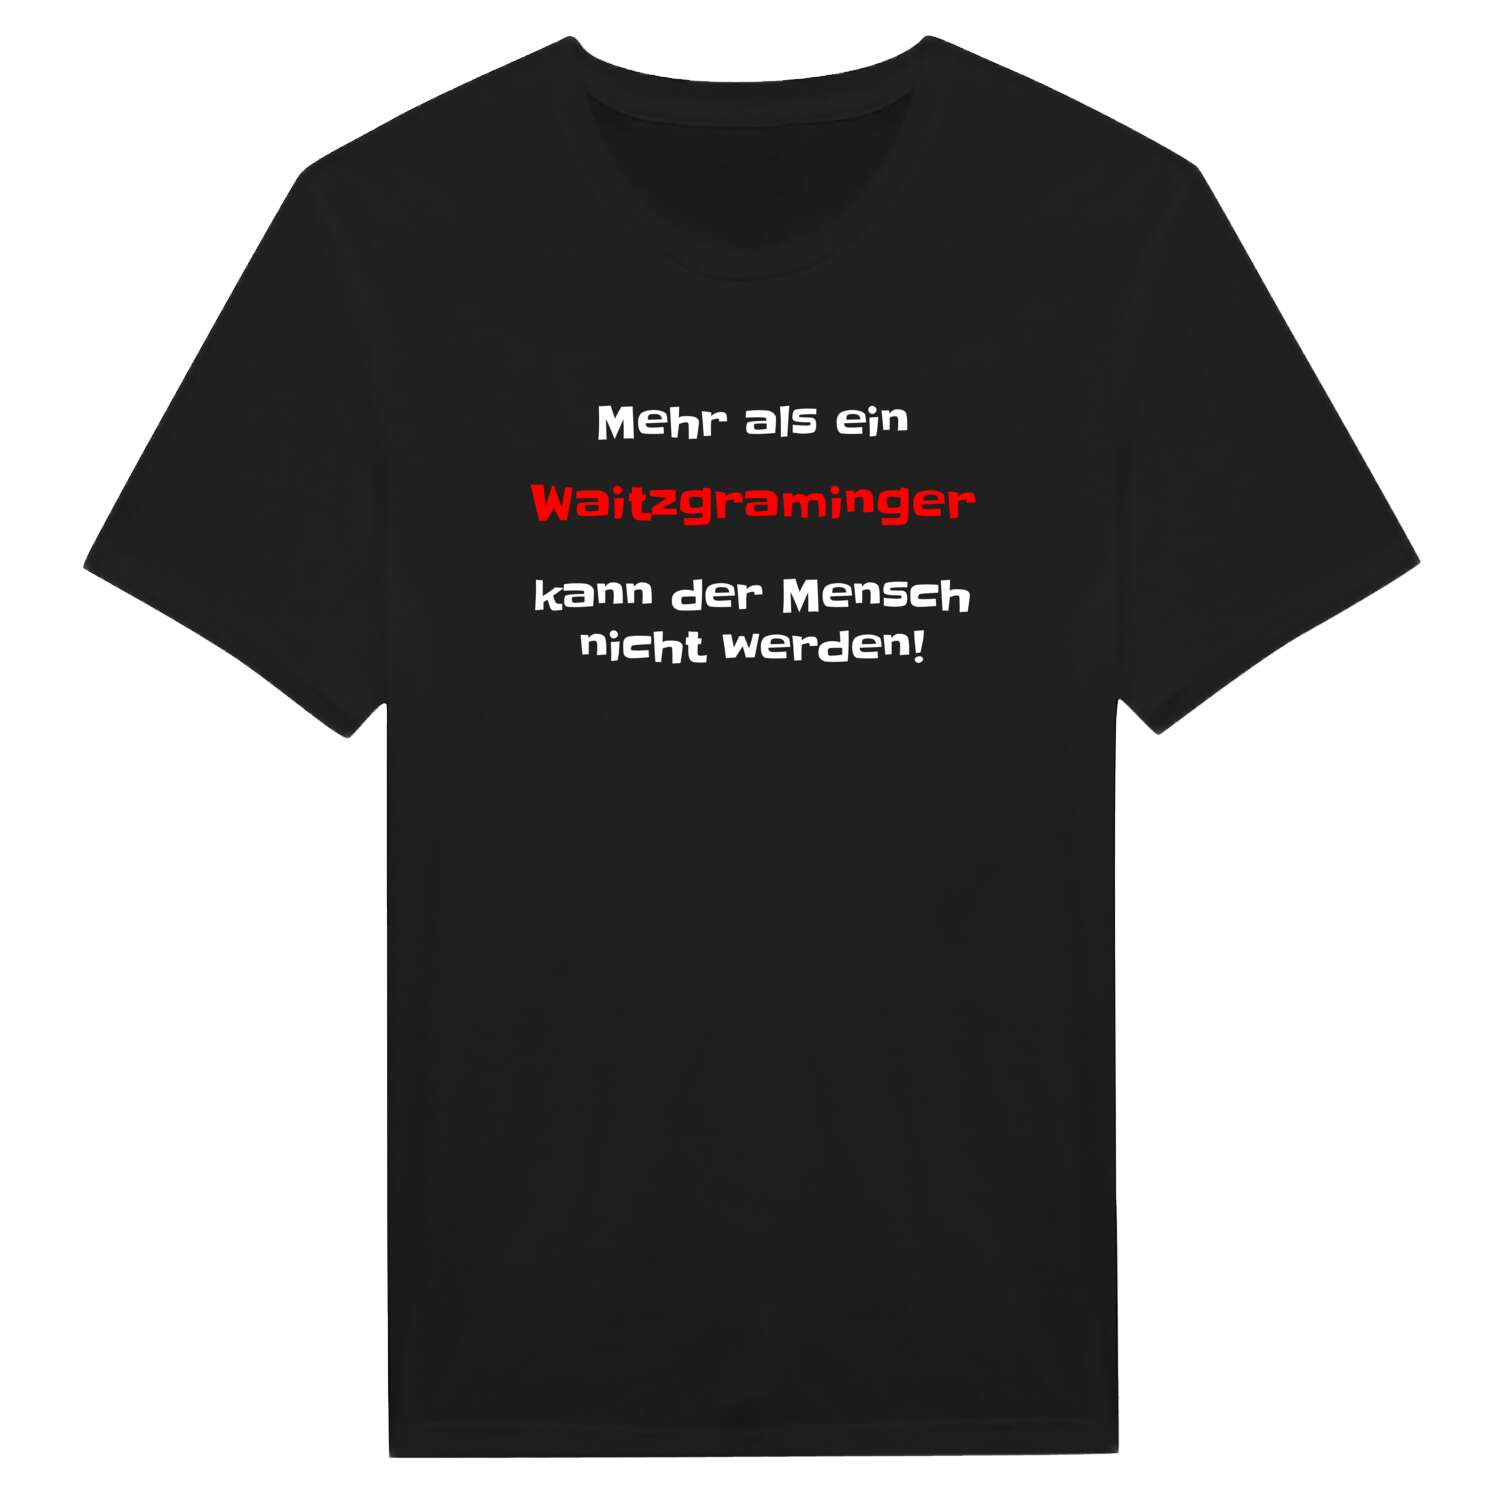 Waitzgraming T-Shirt »Mehr als ein«